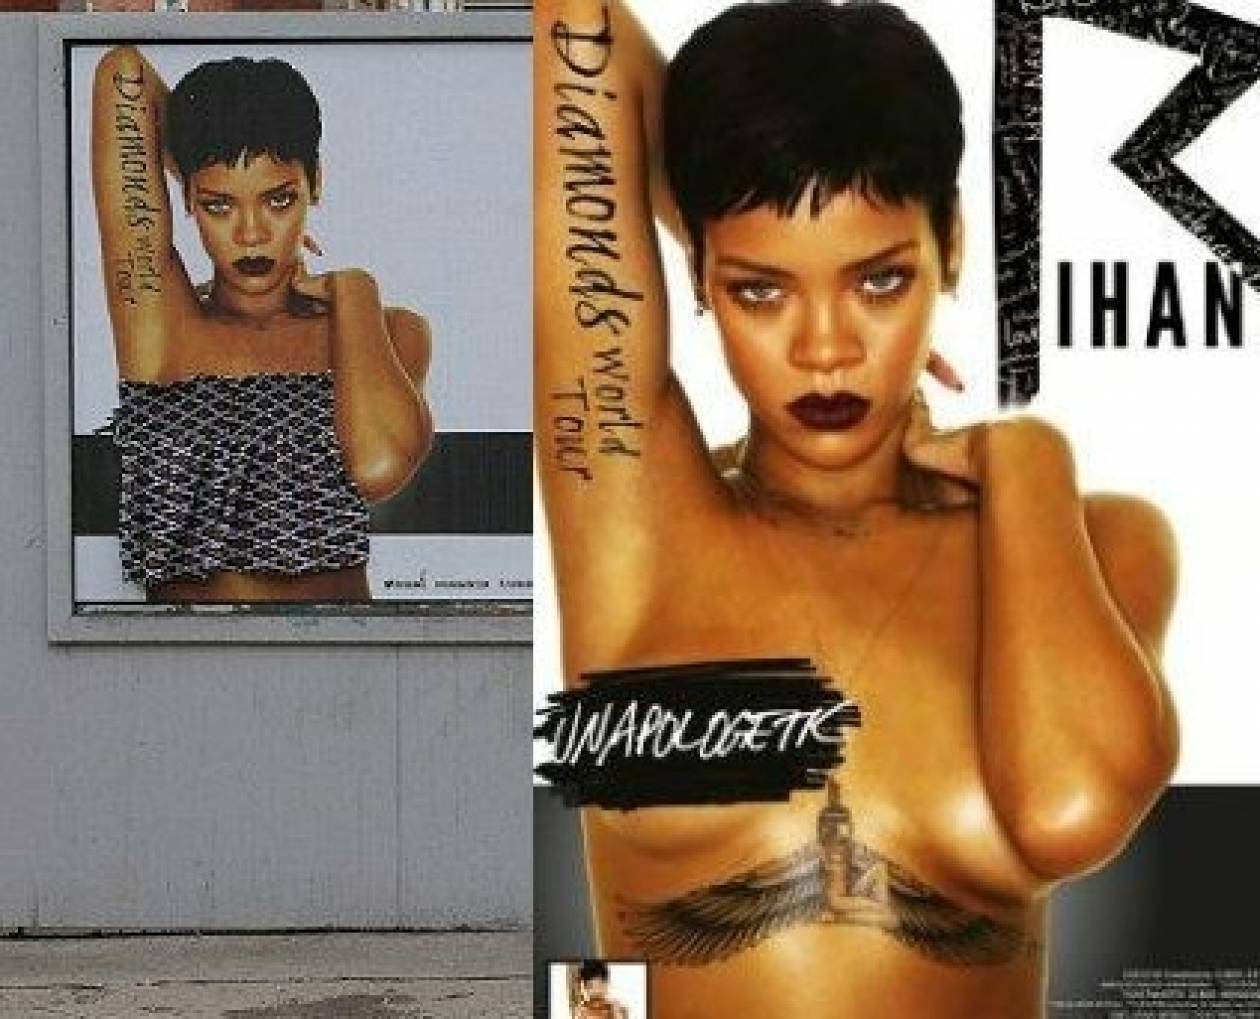 Δεν άντεξαν το γυμνό οι Ιρλανδοί: Έντυσαν την αφίσα της Rihanna (pic)!